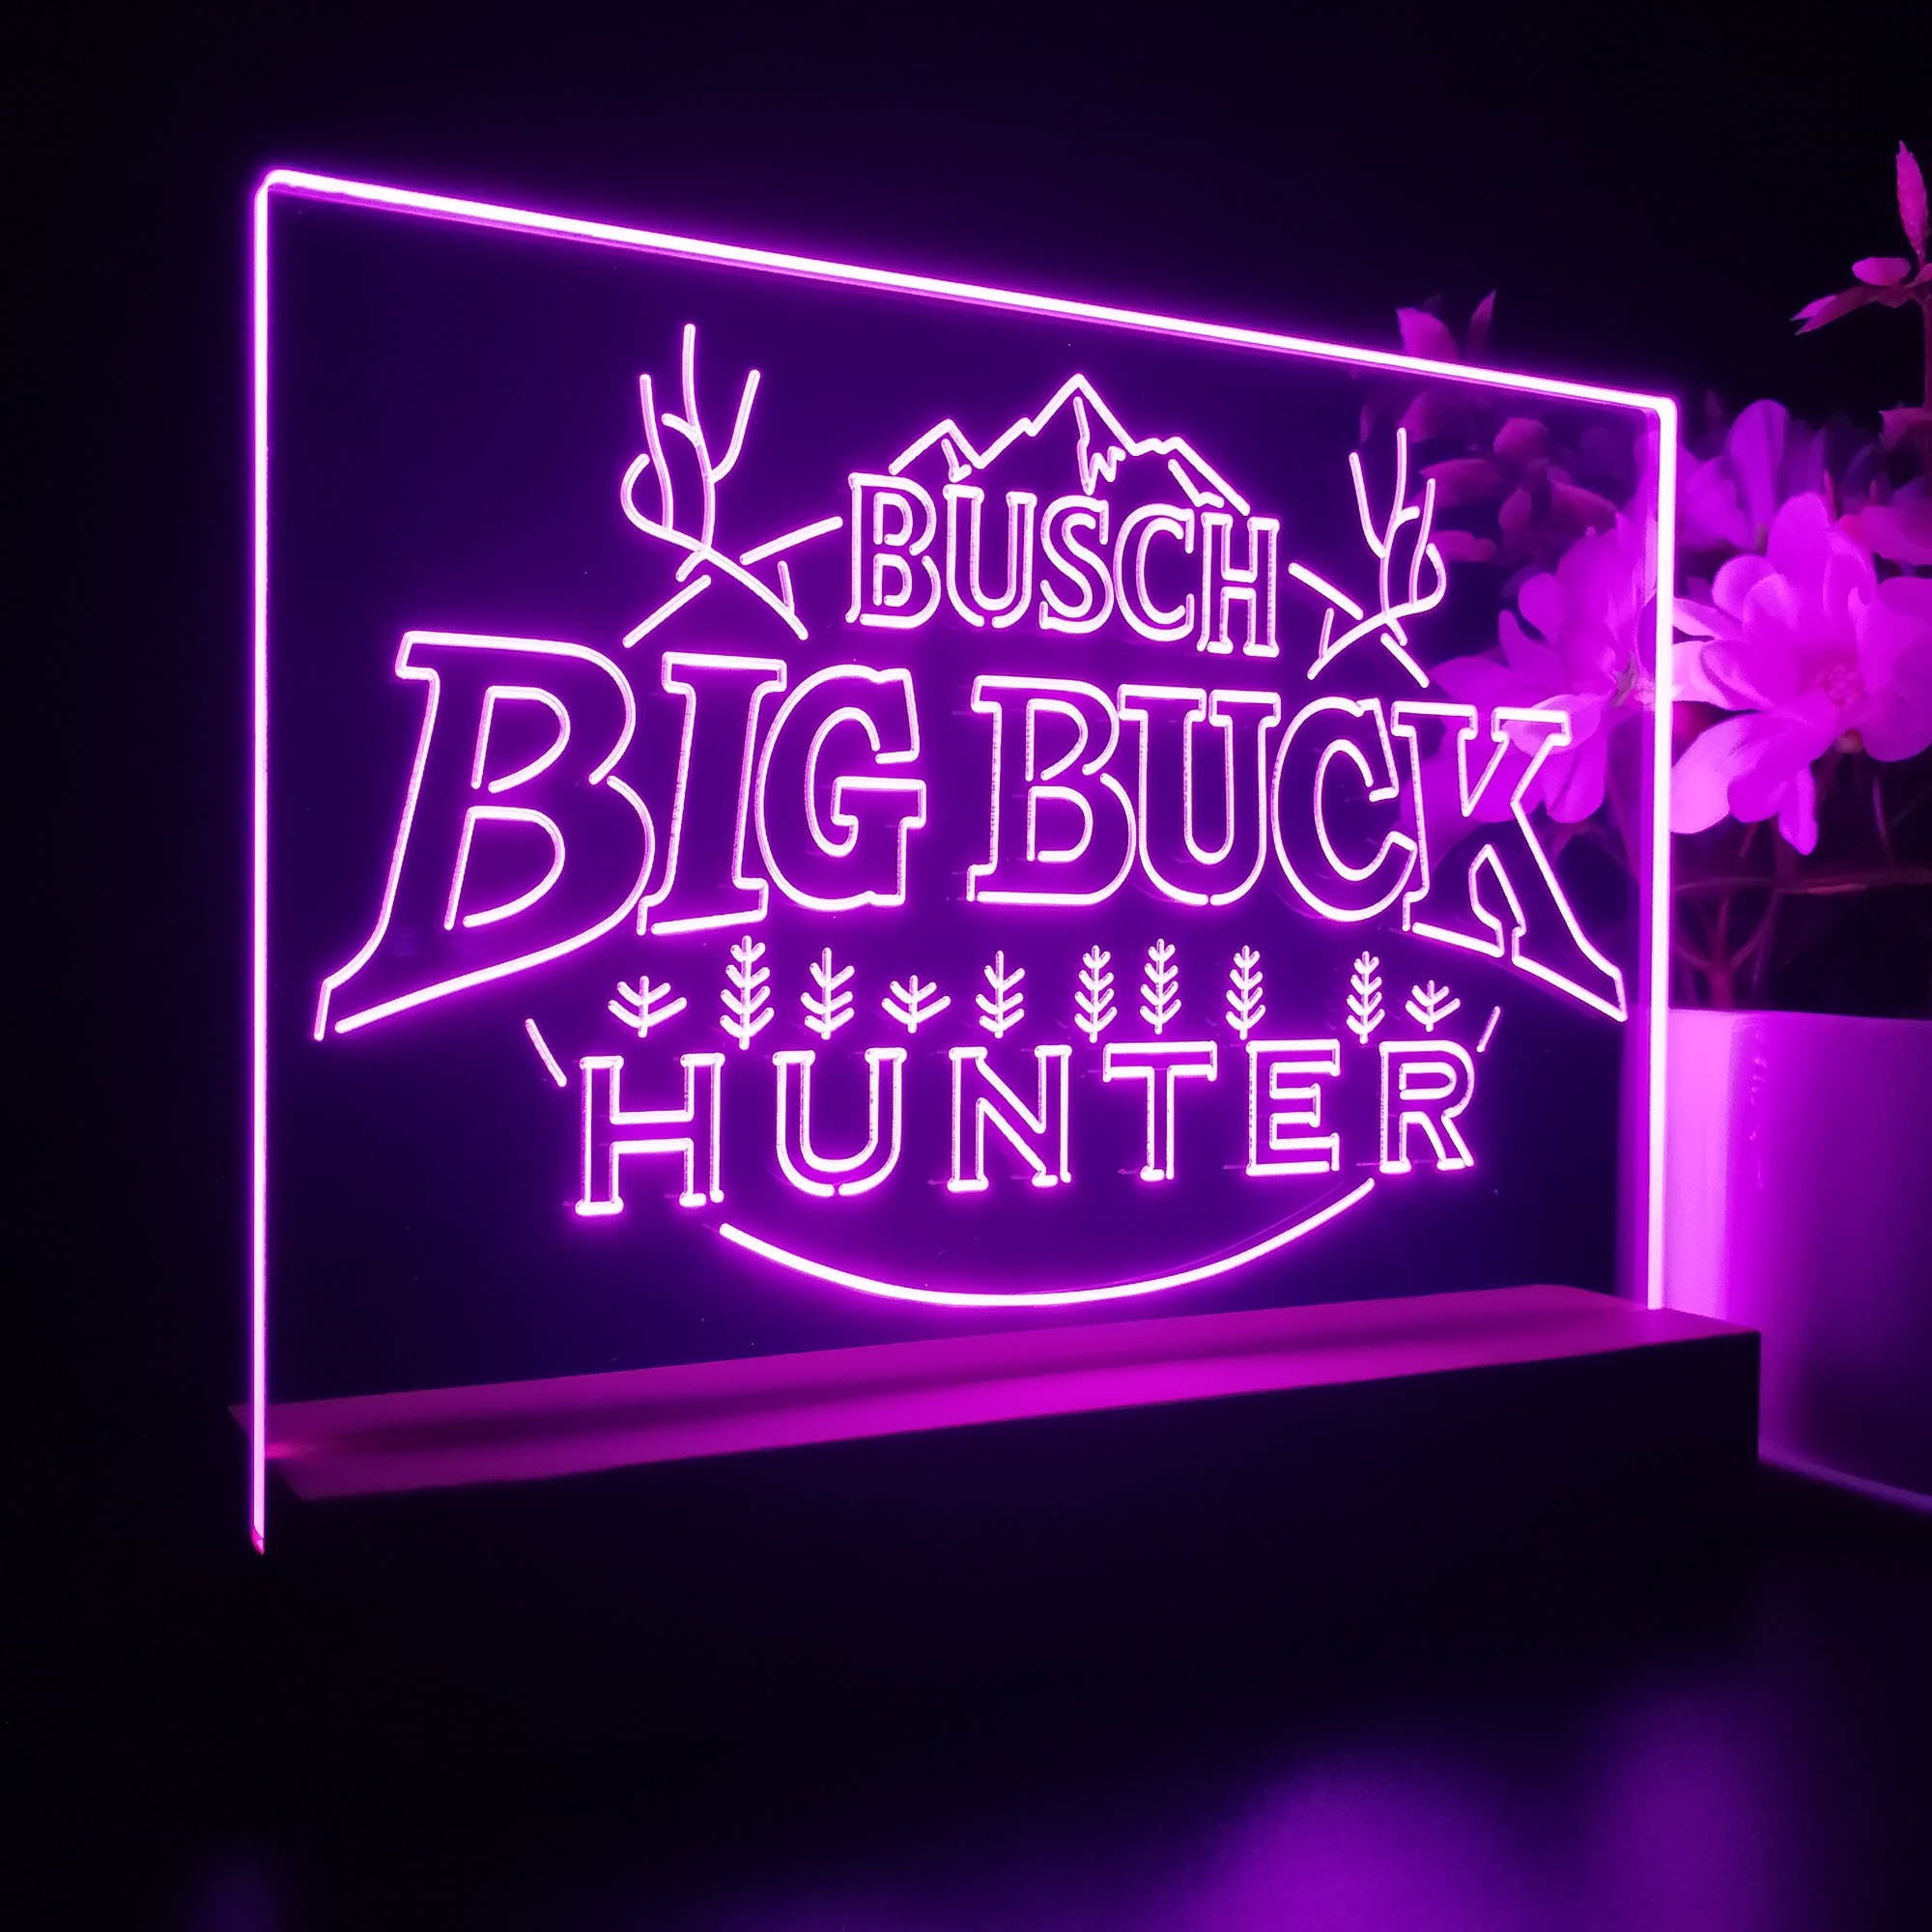 Busch Big Buck Deer Hunter Neon Sign Pub Bar Decor Lamp